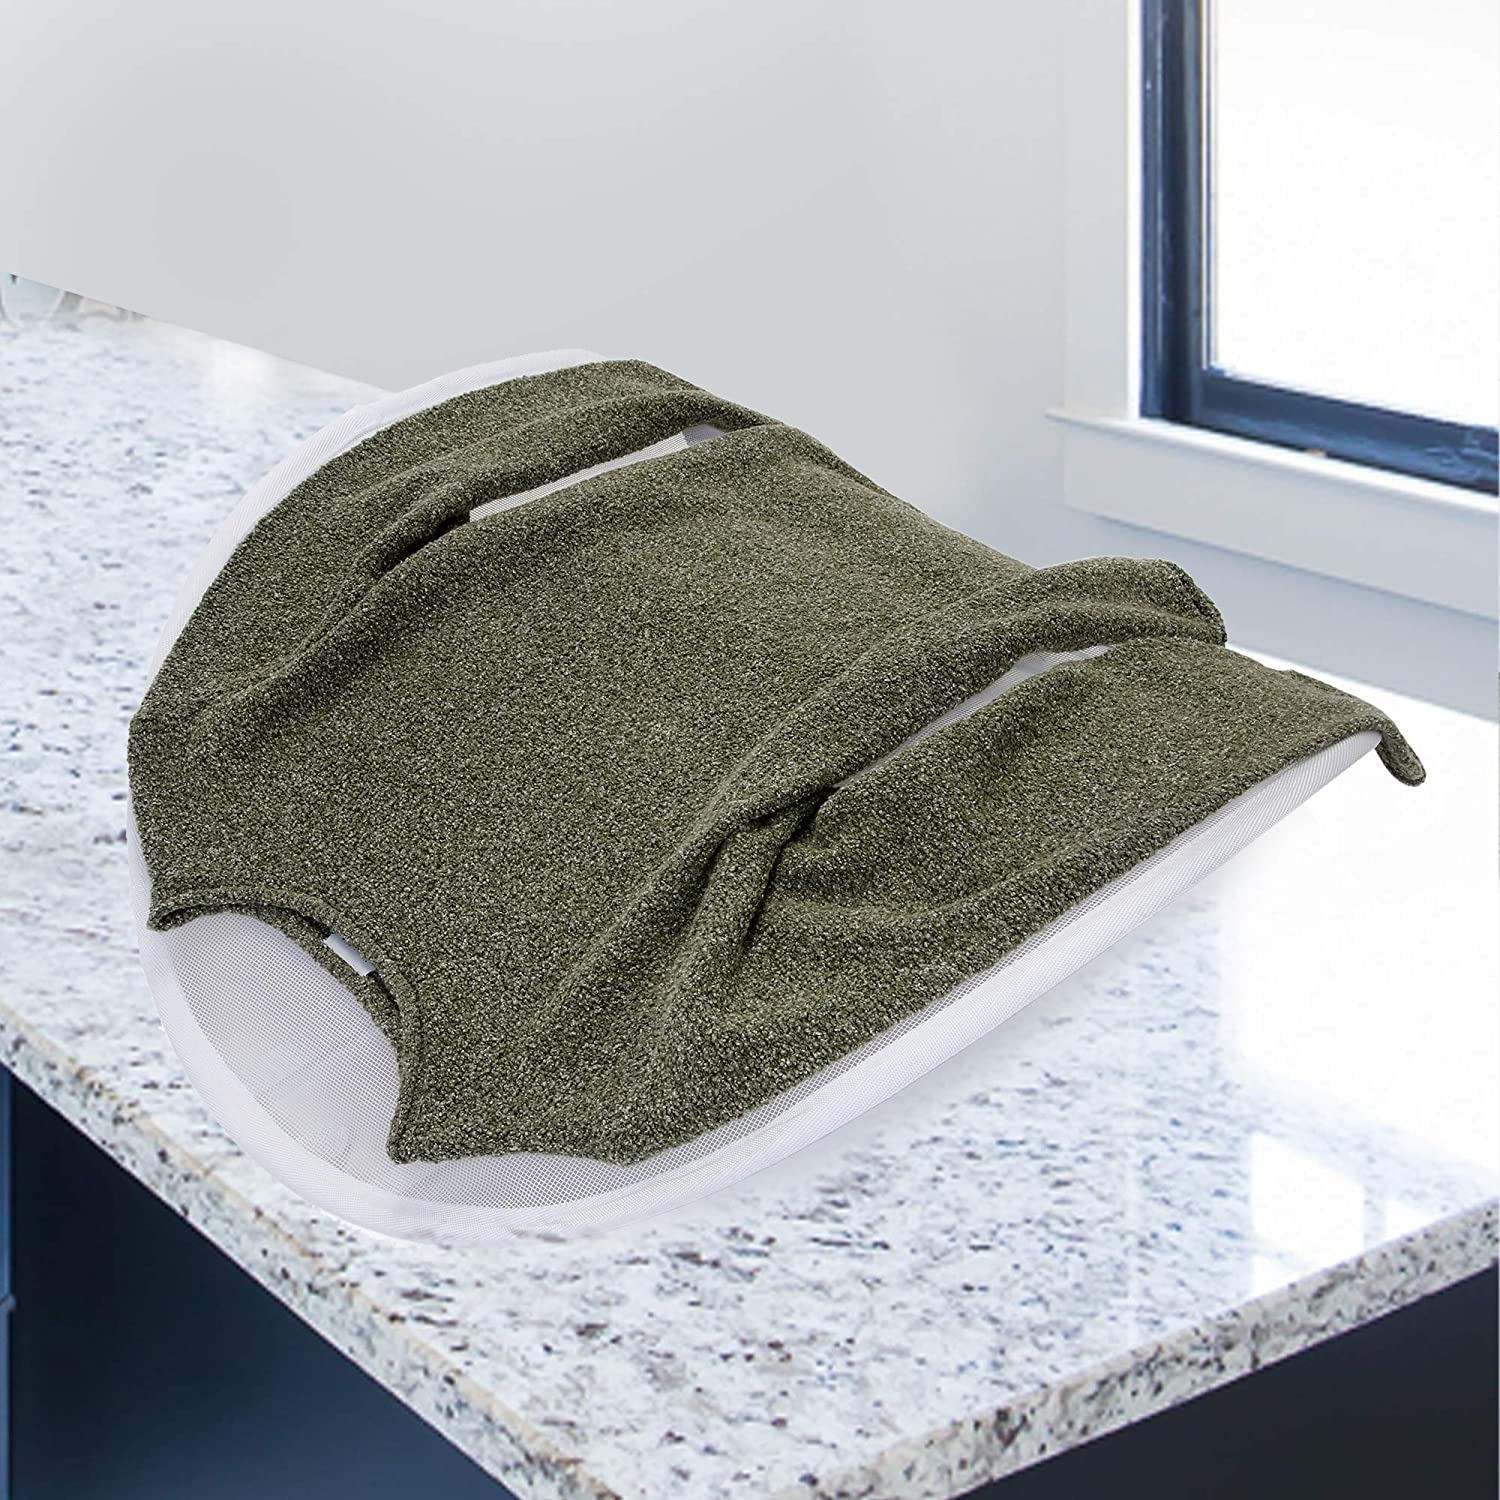 Pop-Up Adjustable Sweater Dryer with Adjustable Straps - Smart Design® 2